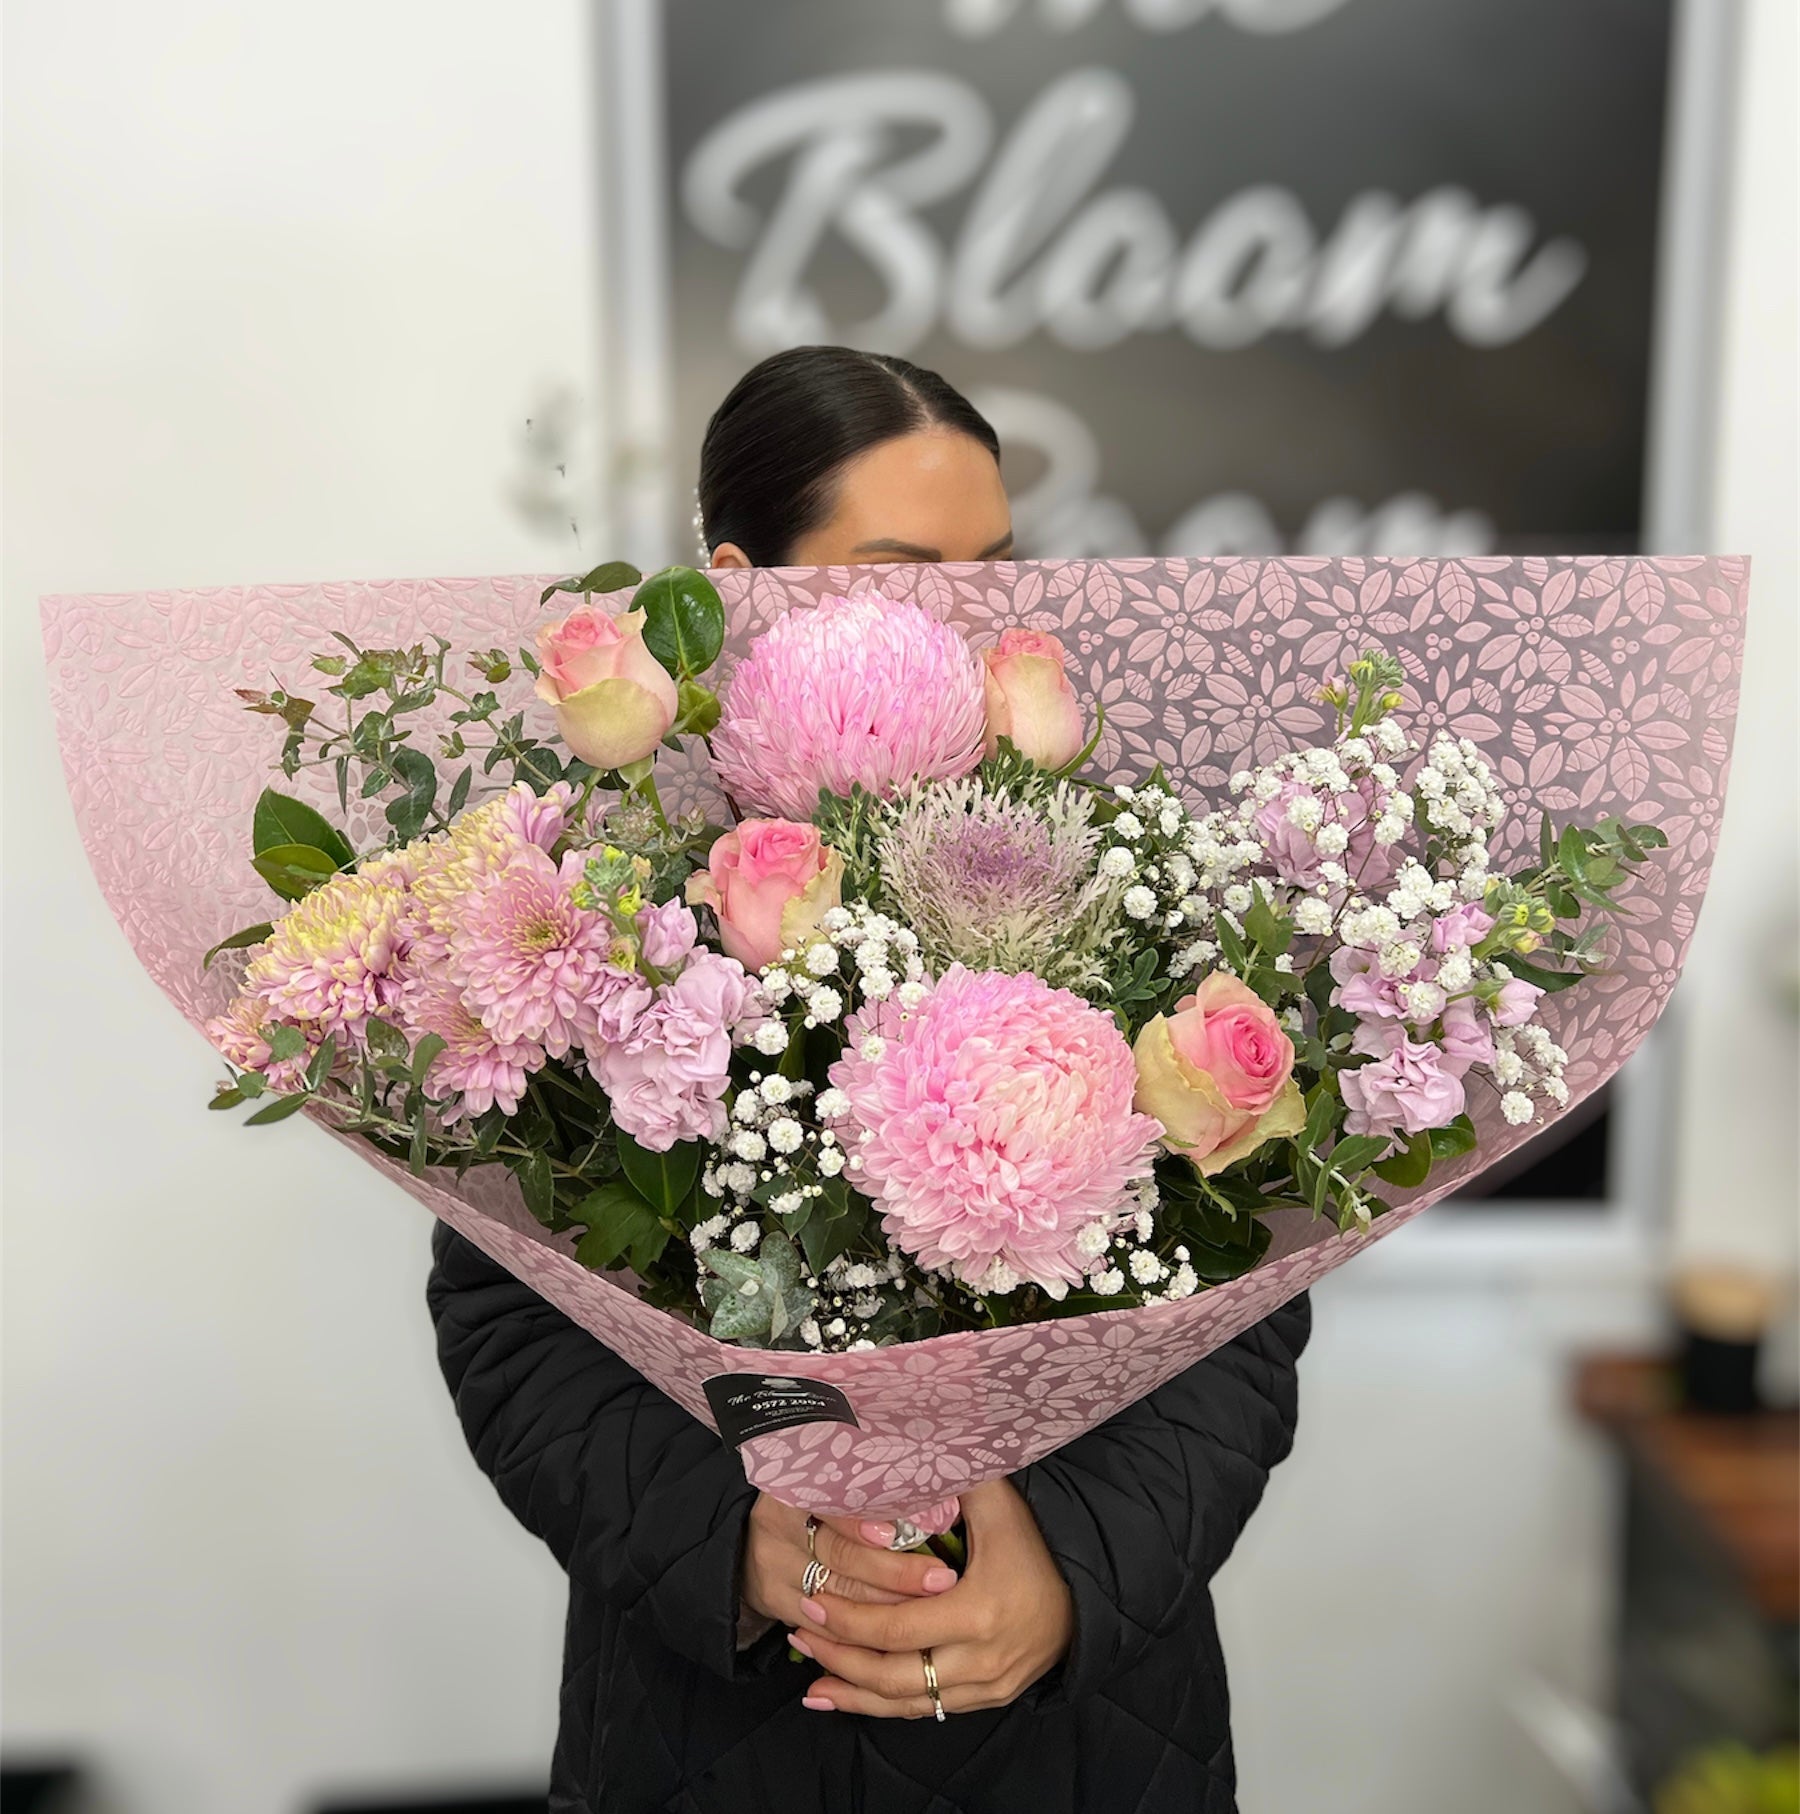 Mum's Surprise Bouquet - The Bloom Room 